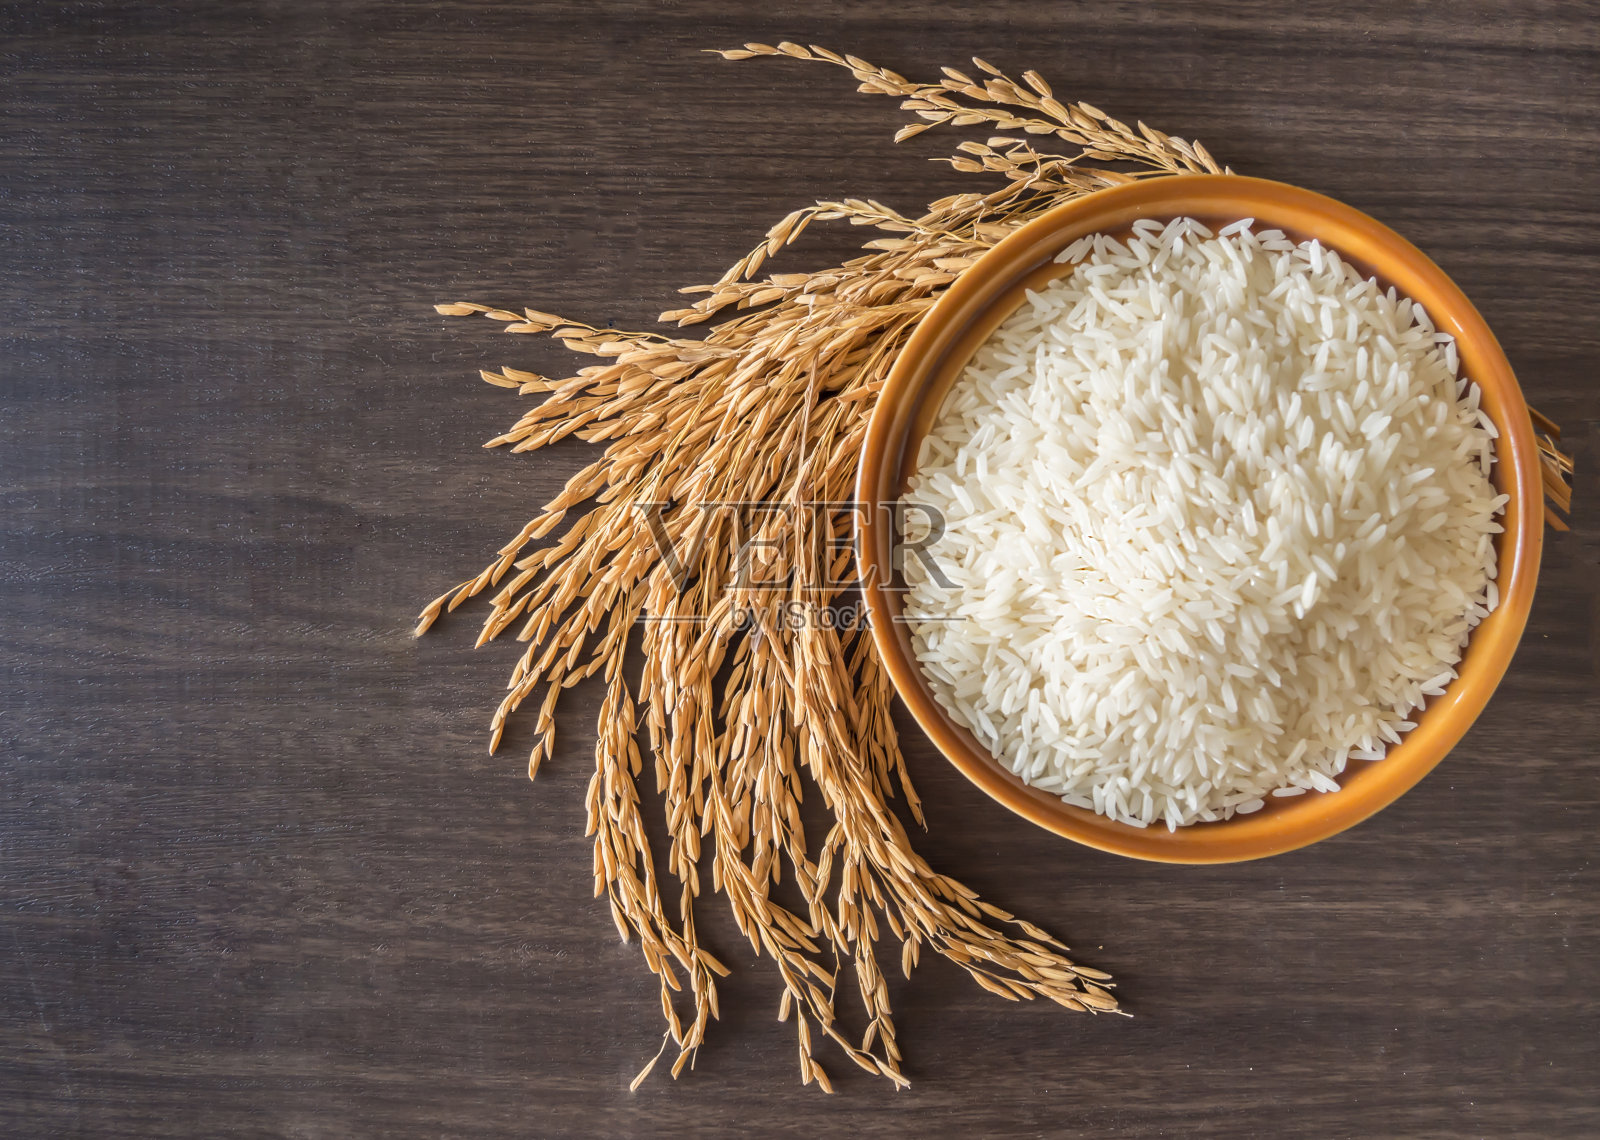 糙米(泰国茉莉花米)放在棕色的碗里，谷穗或未碾碎的米放在木头的背景上照片摄影图片